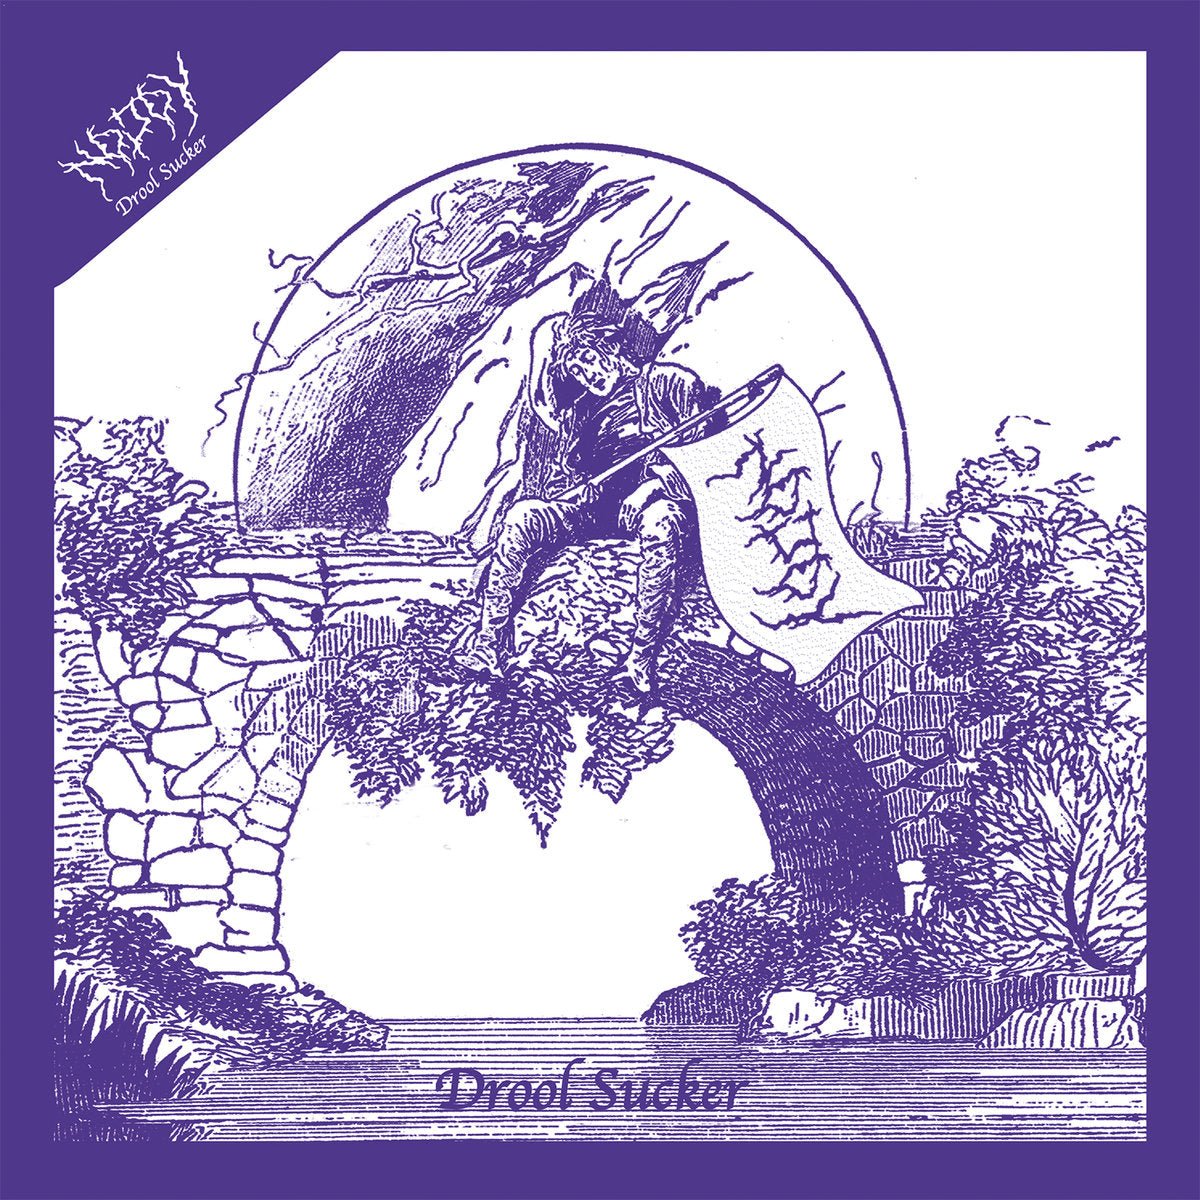 No Joy - Drool Sucker 7" - Vinyl - Topshelf